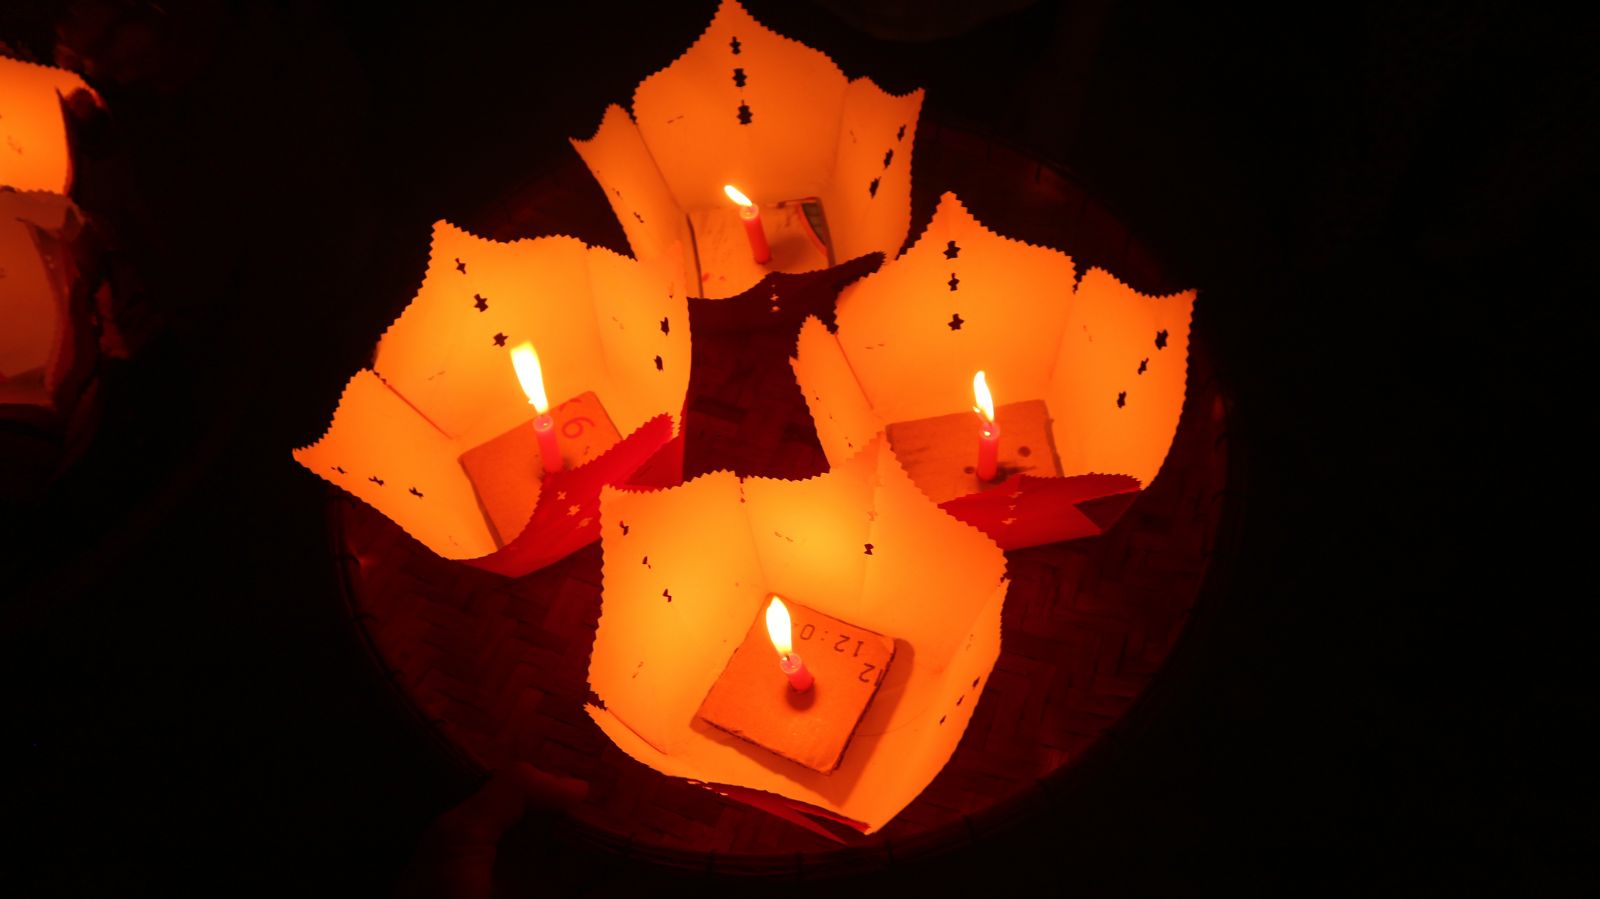 Candles on Thu Bon River, Hoi An